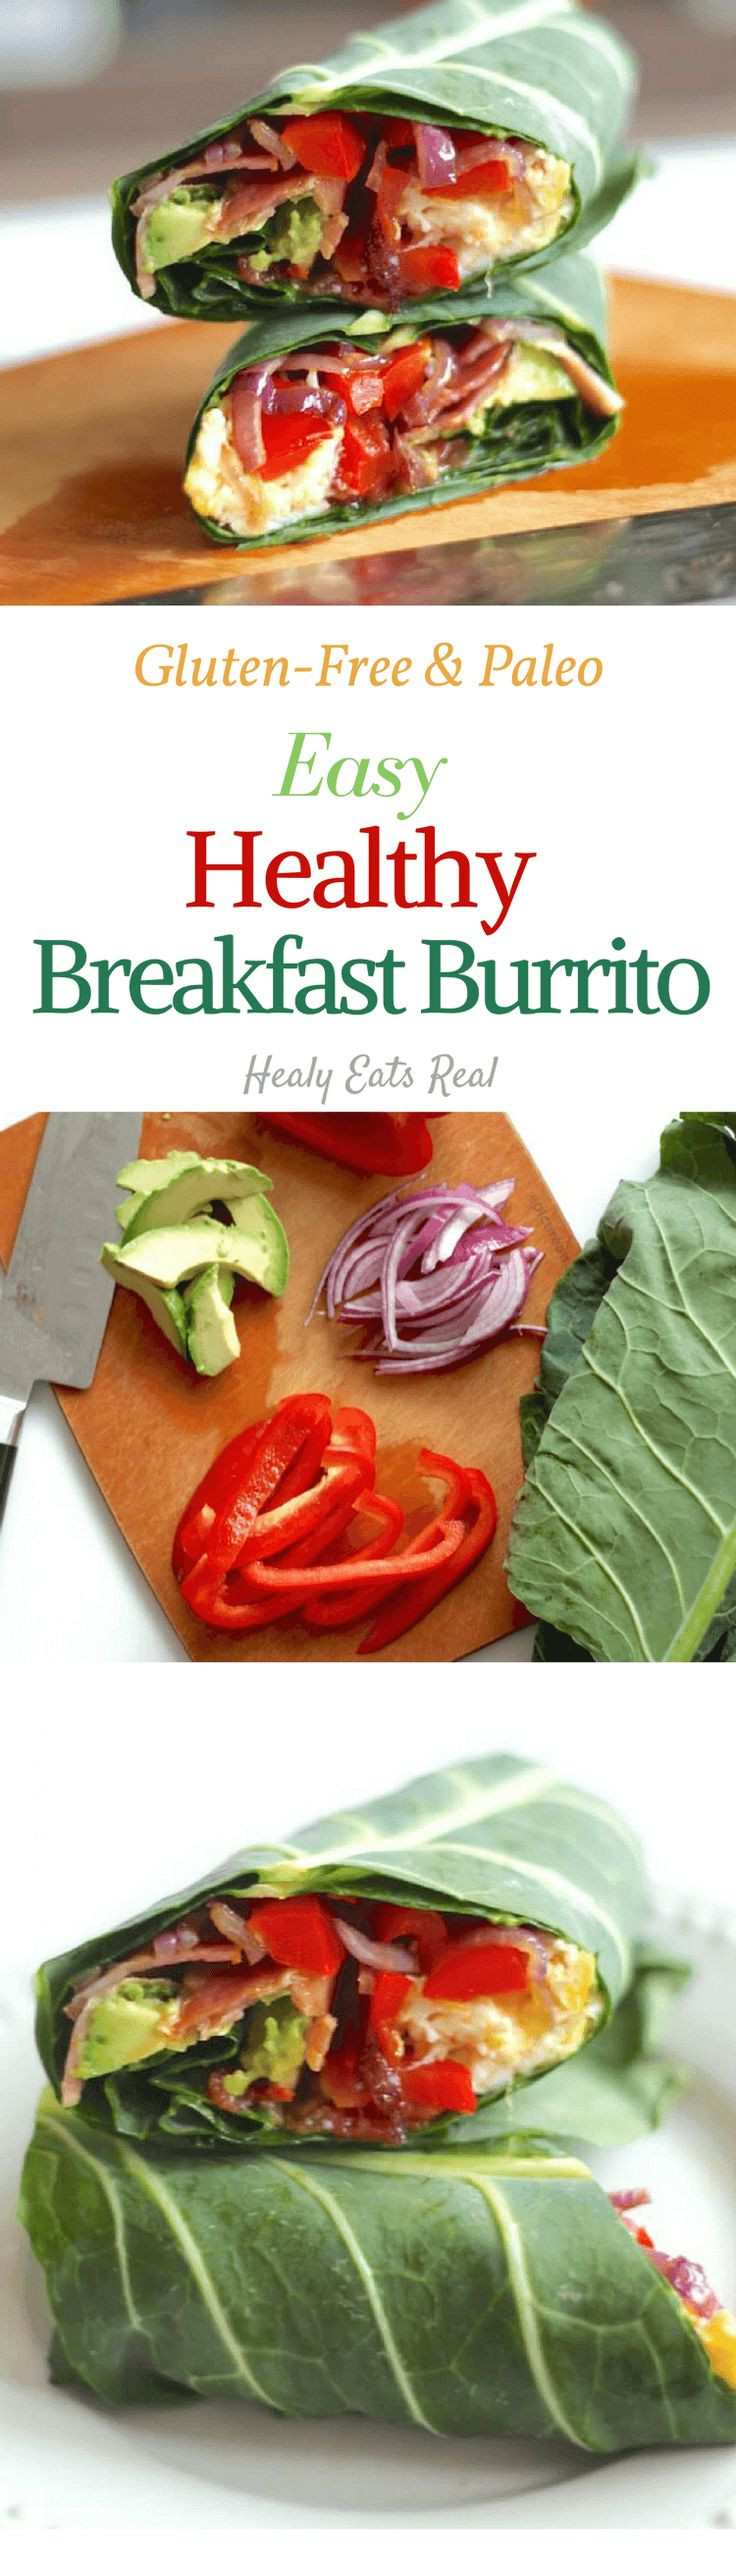 Healthy Breakfast Austin
 Best 25 Healthy breakfasts ideas on Pinterest